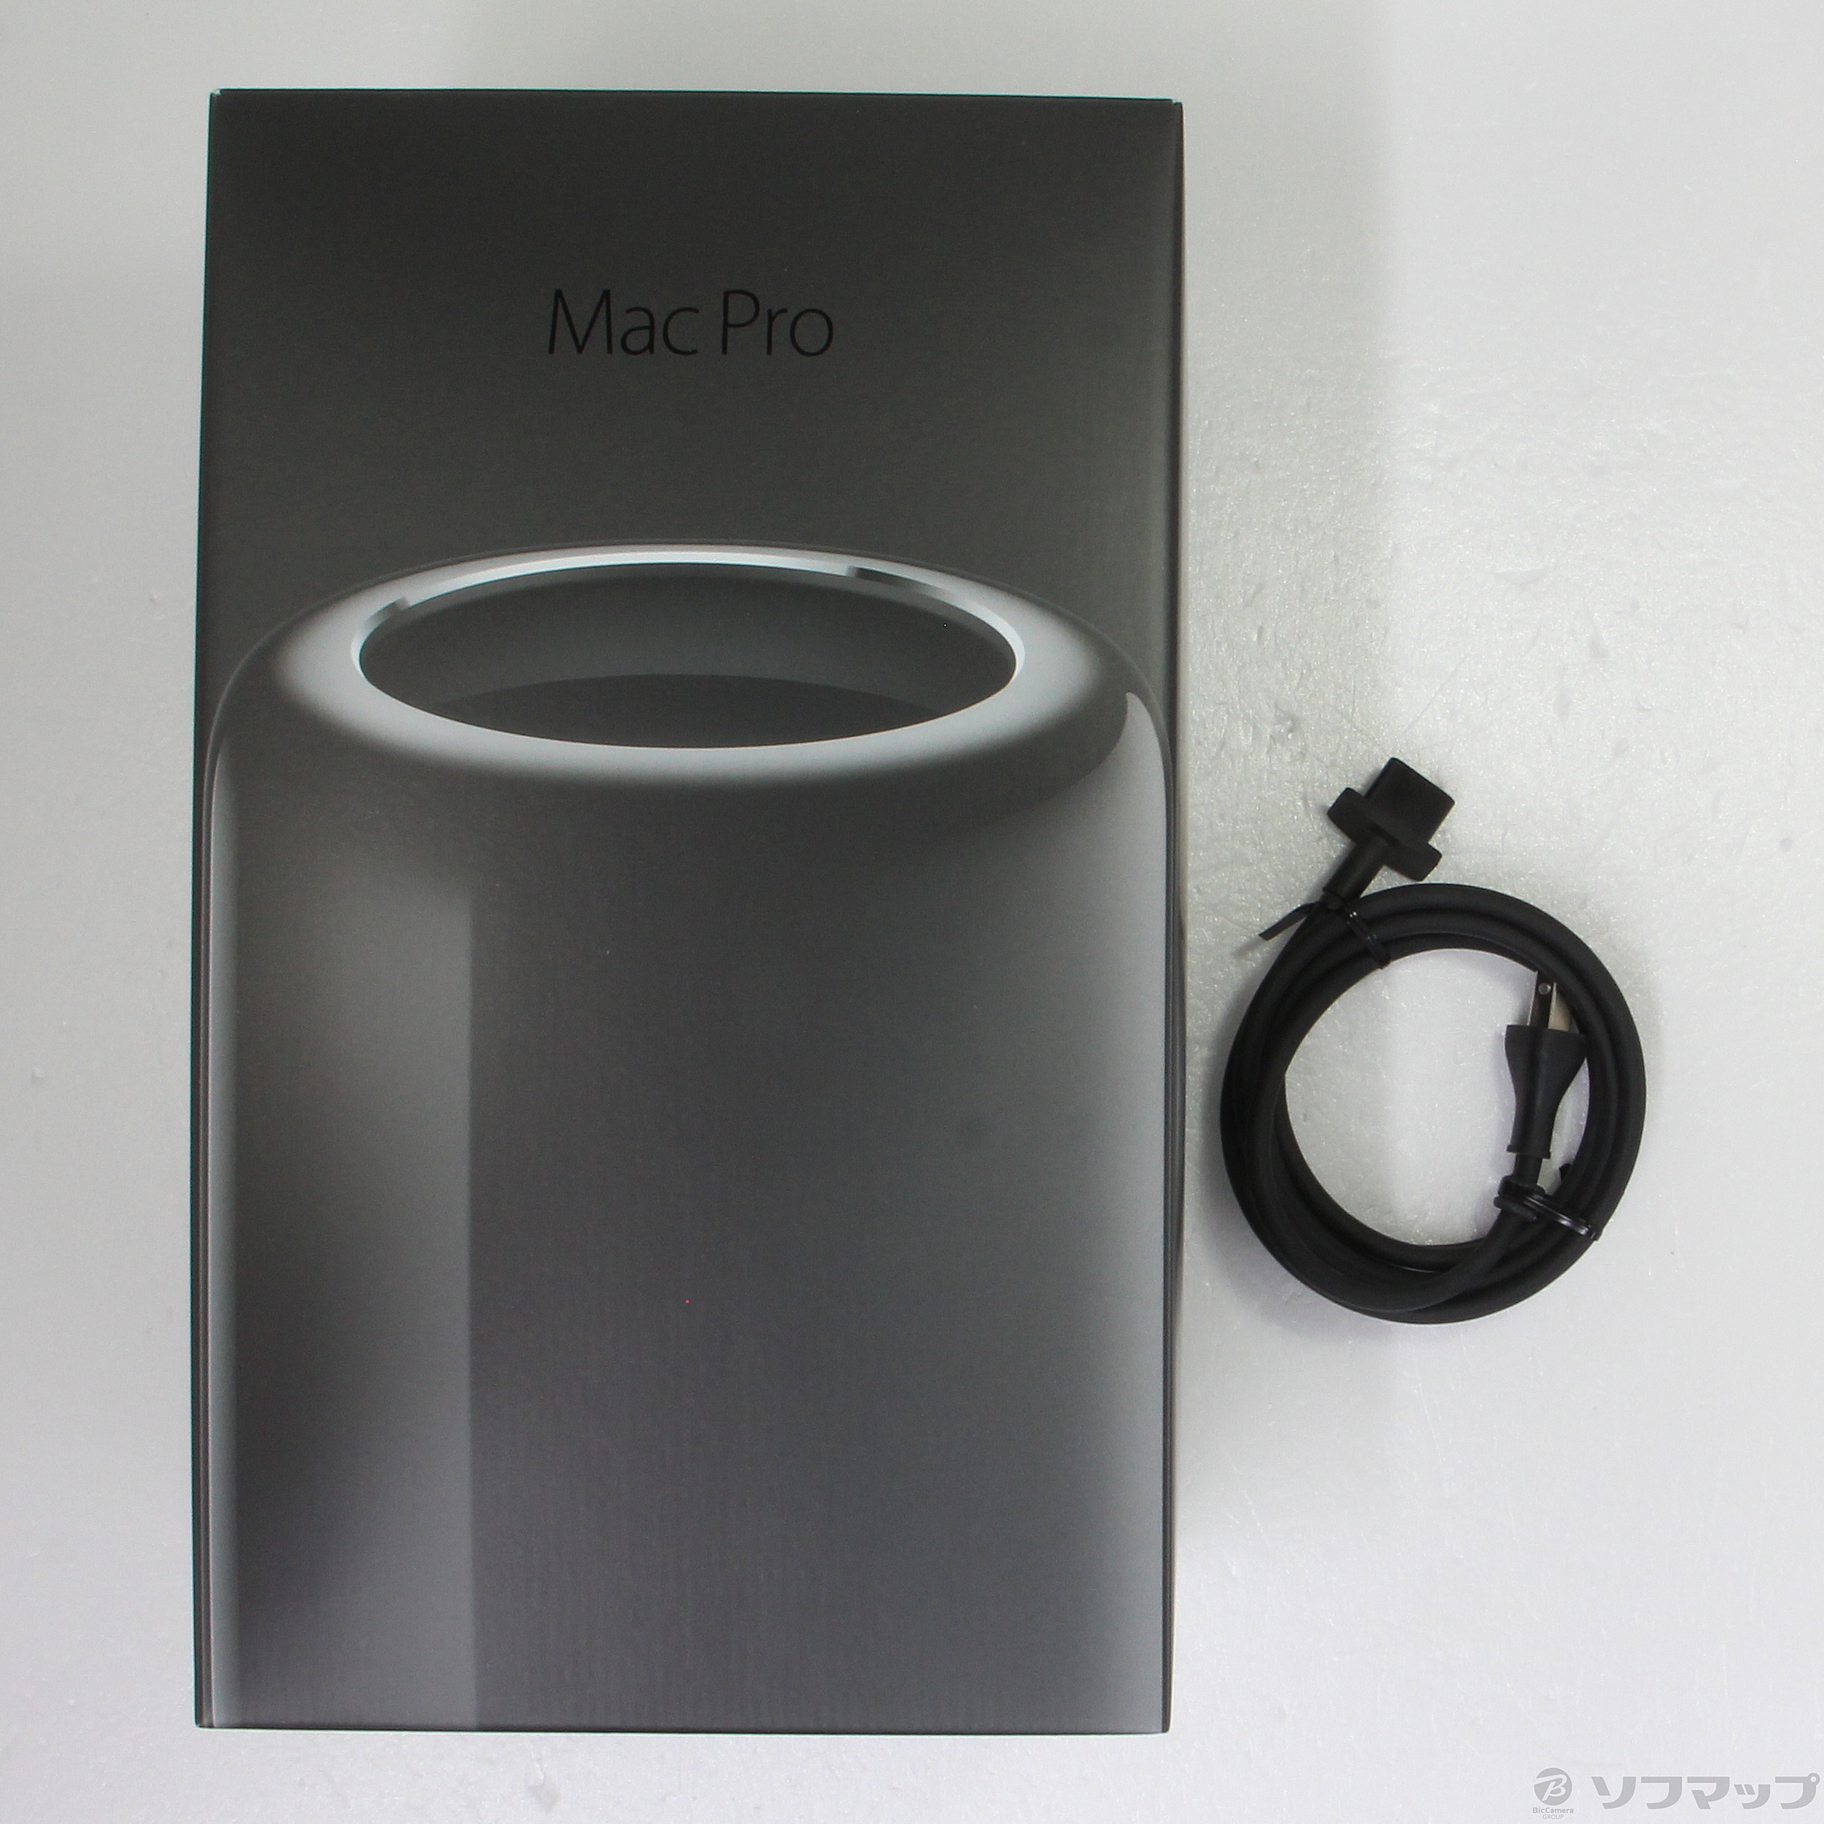 大きな割引 MAC PRO Technical LATE Pro - Mac 2013 (Late MD878J/A